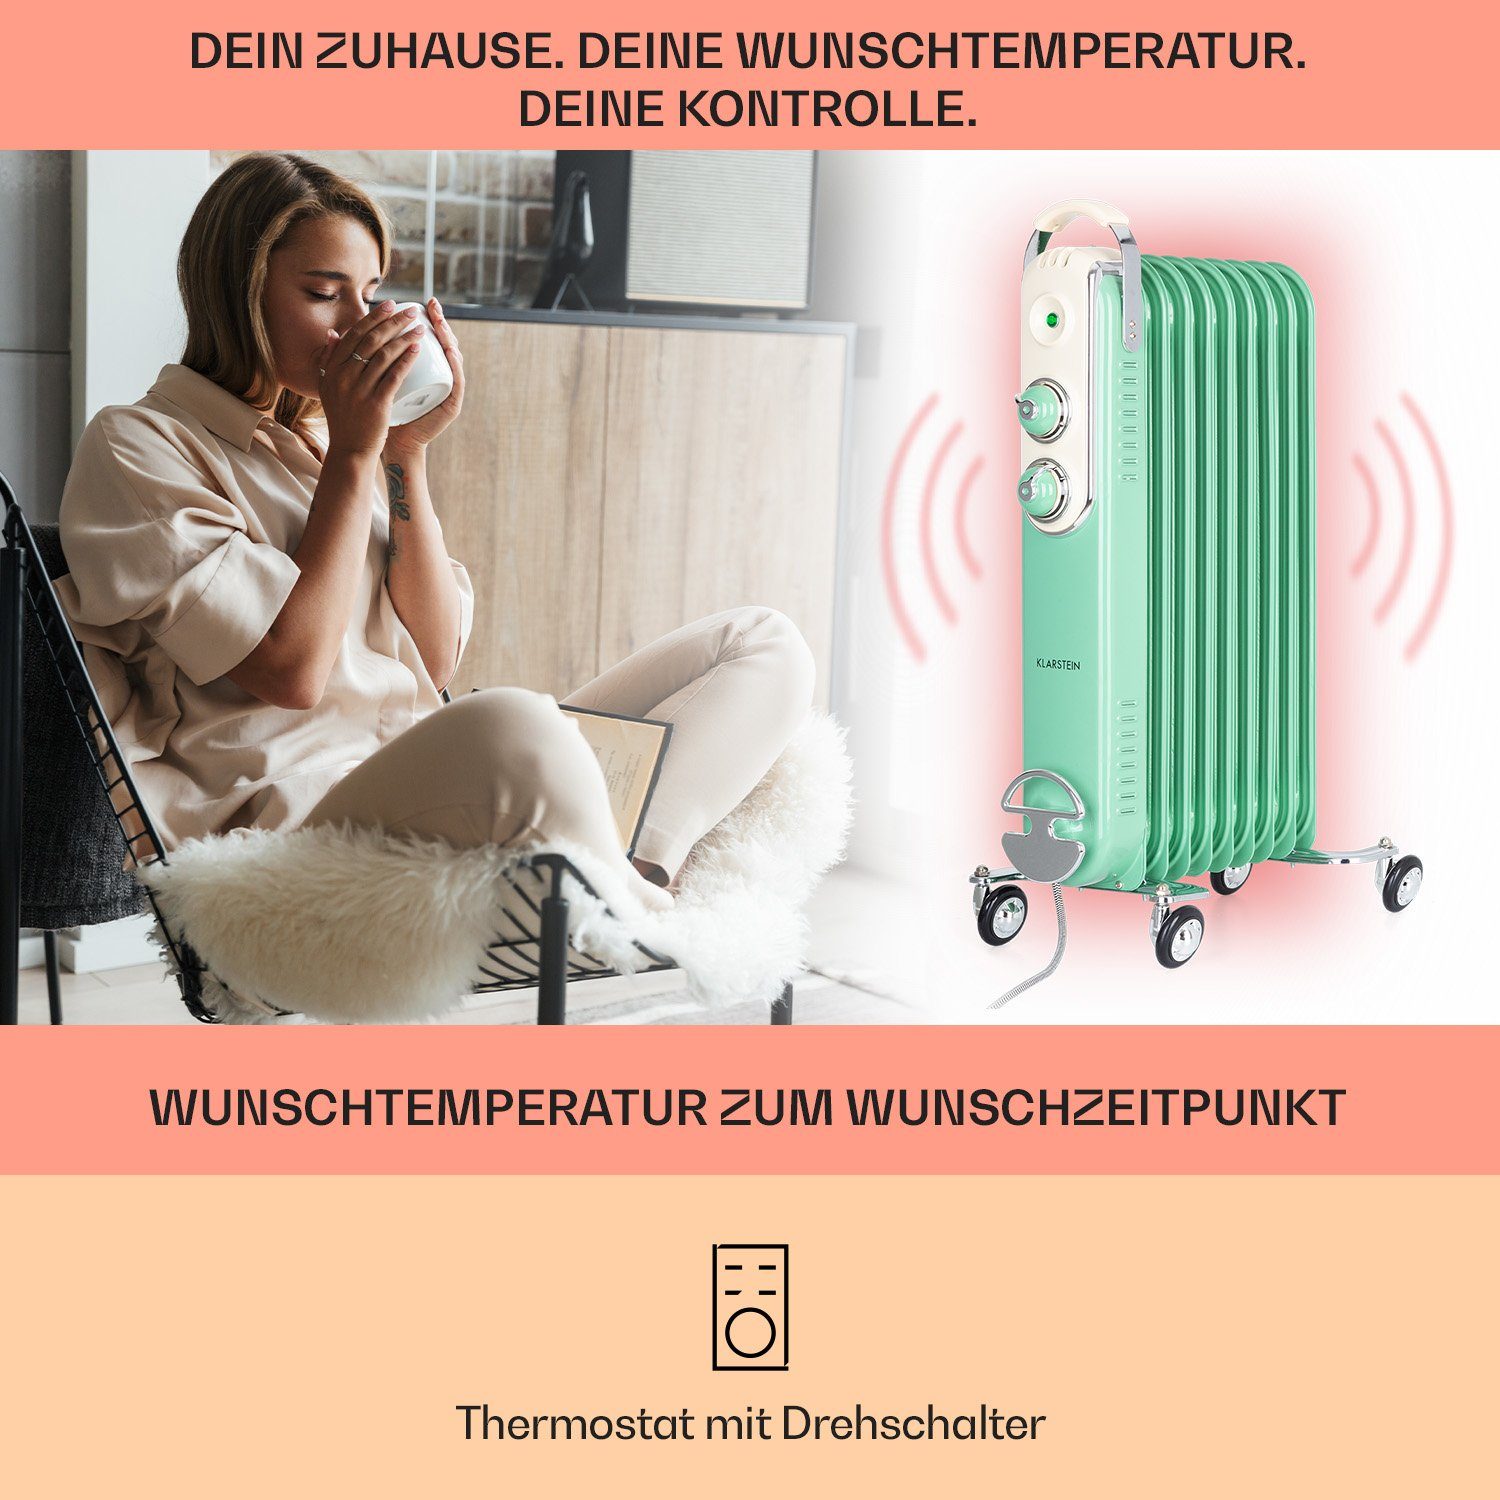 2000 Thermostat W, Heizstrahler Thermaxx energiesparend Retroheat, Radiator Klarstein Heizkörper elektrisch Ölradiator